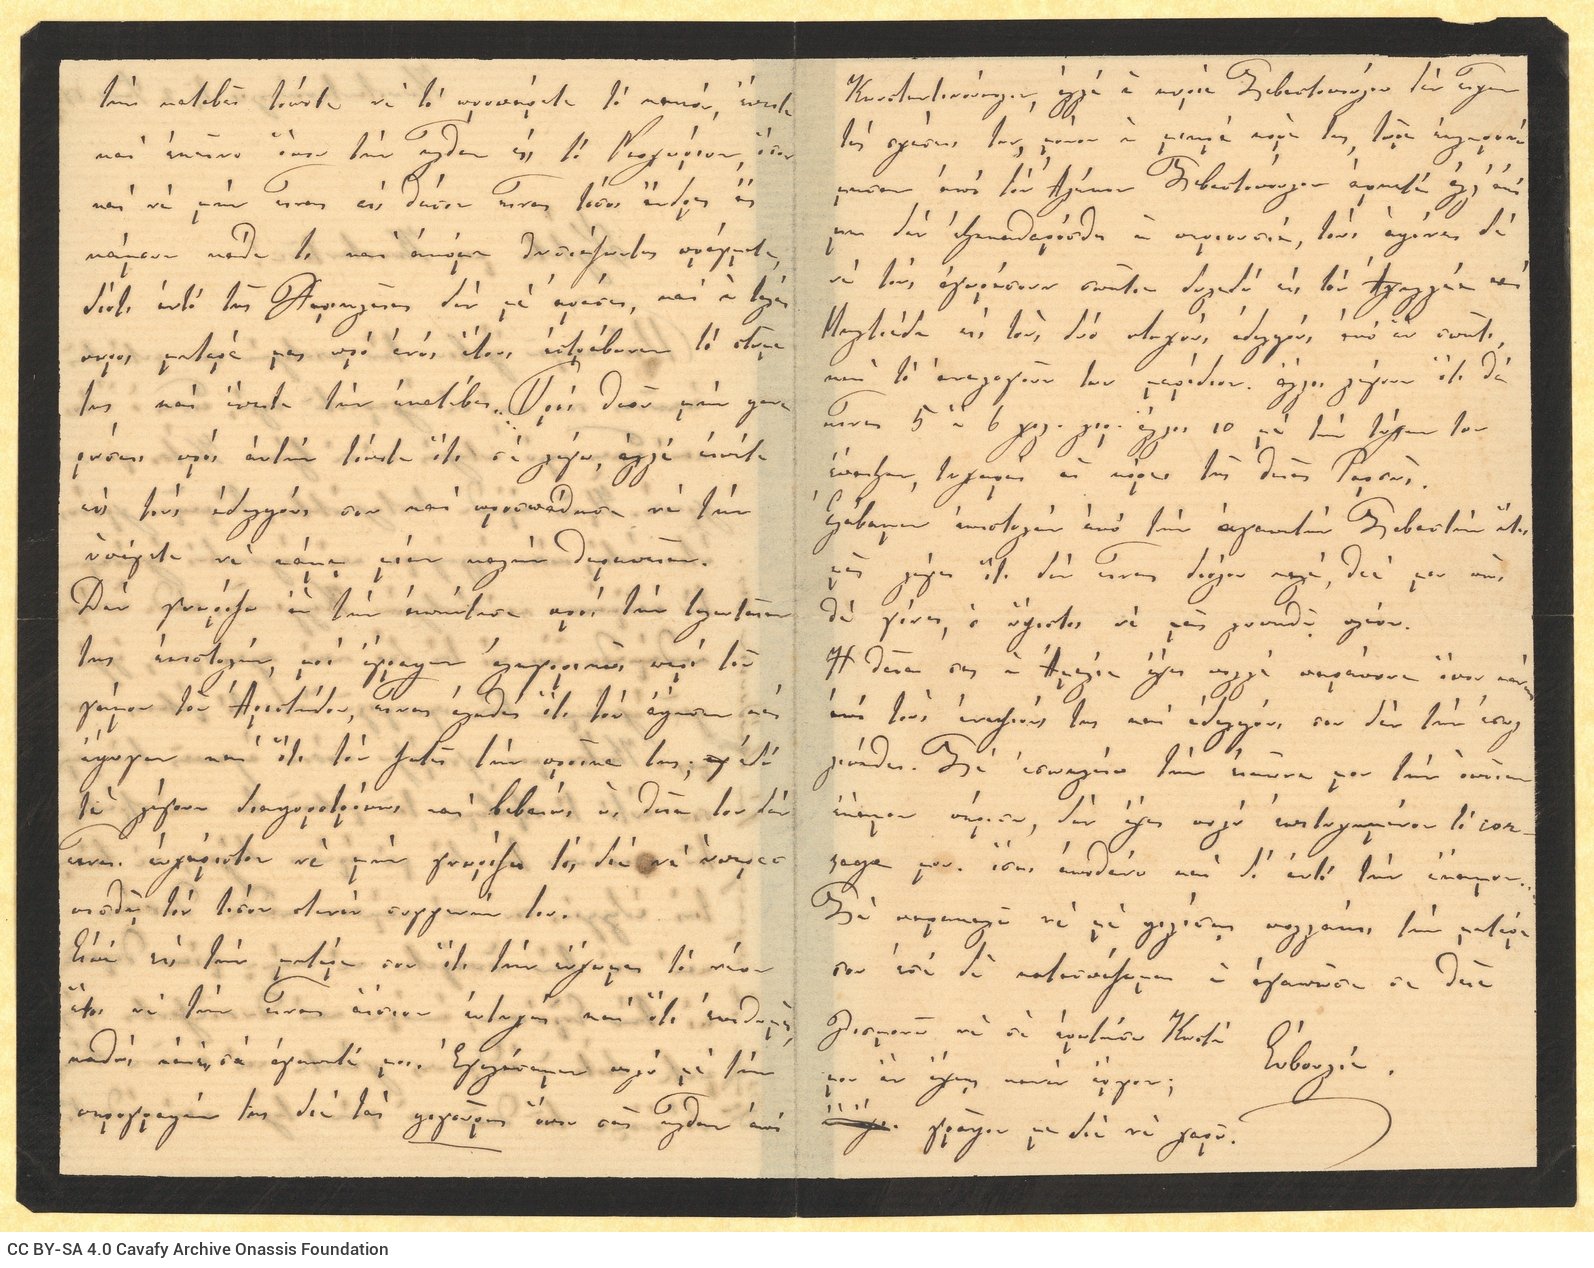 Χειρόγραφη επιστολή της θείας του Καβάφη Ευβουλίας Παπαλαμπρινού π�